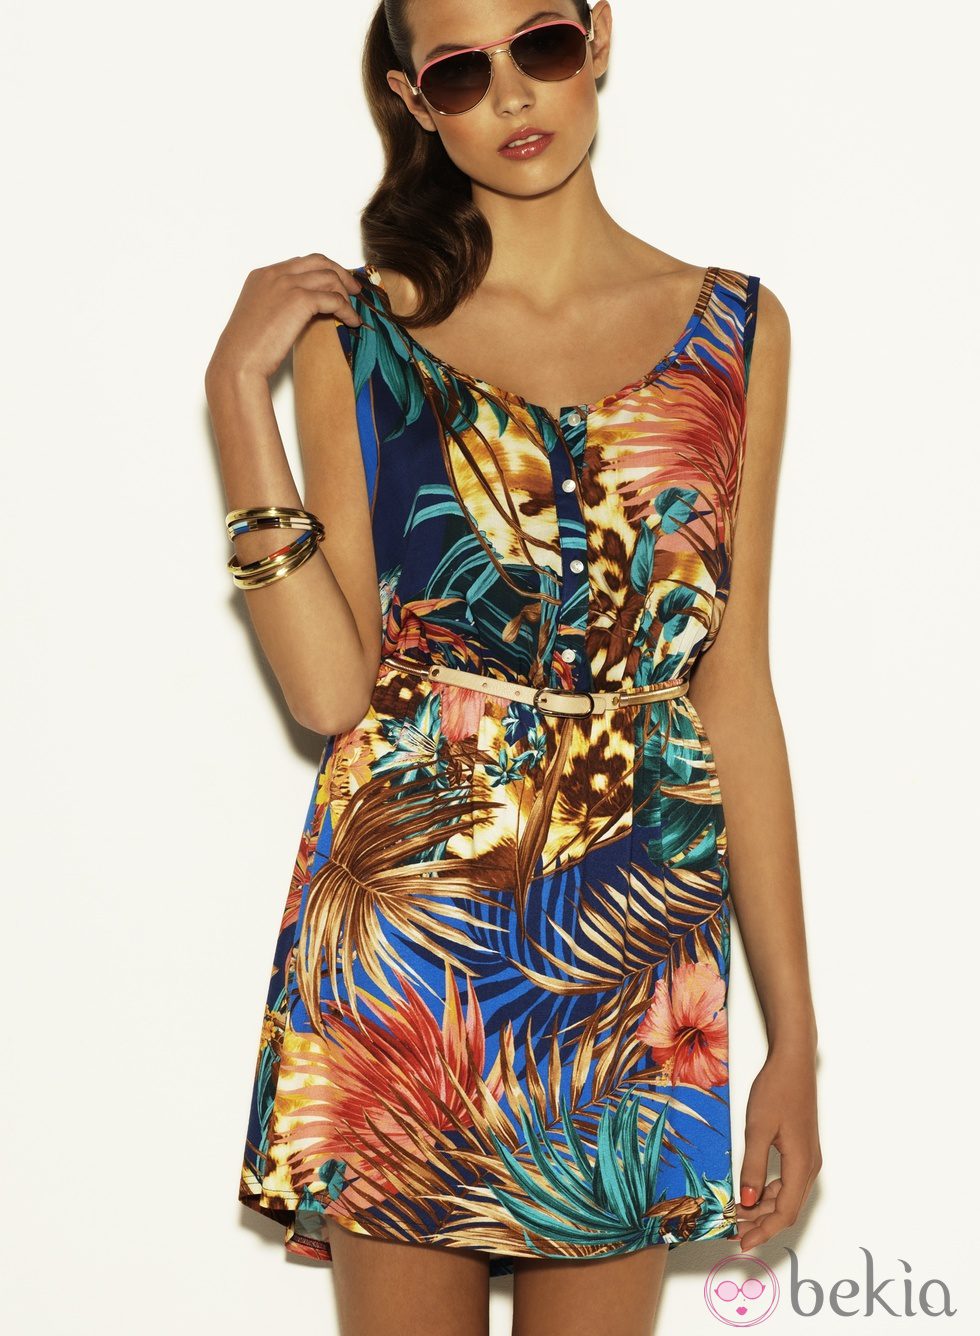 Vestido estampado tropical de la colección Verano 2012 de Suiteblanco